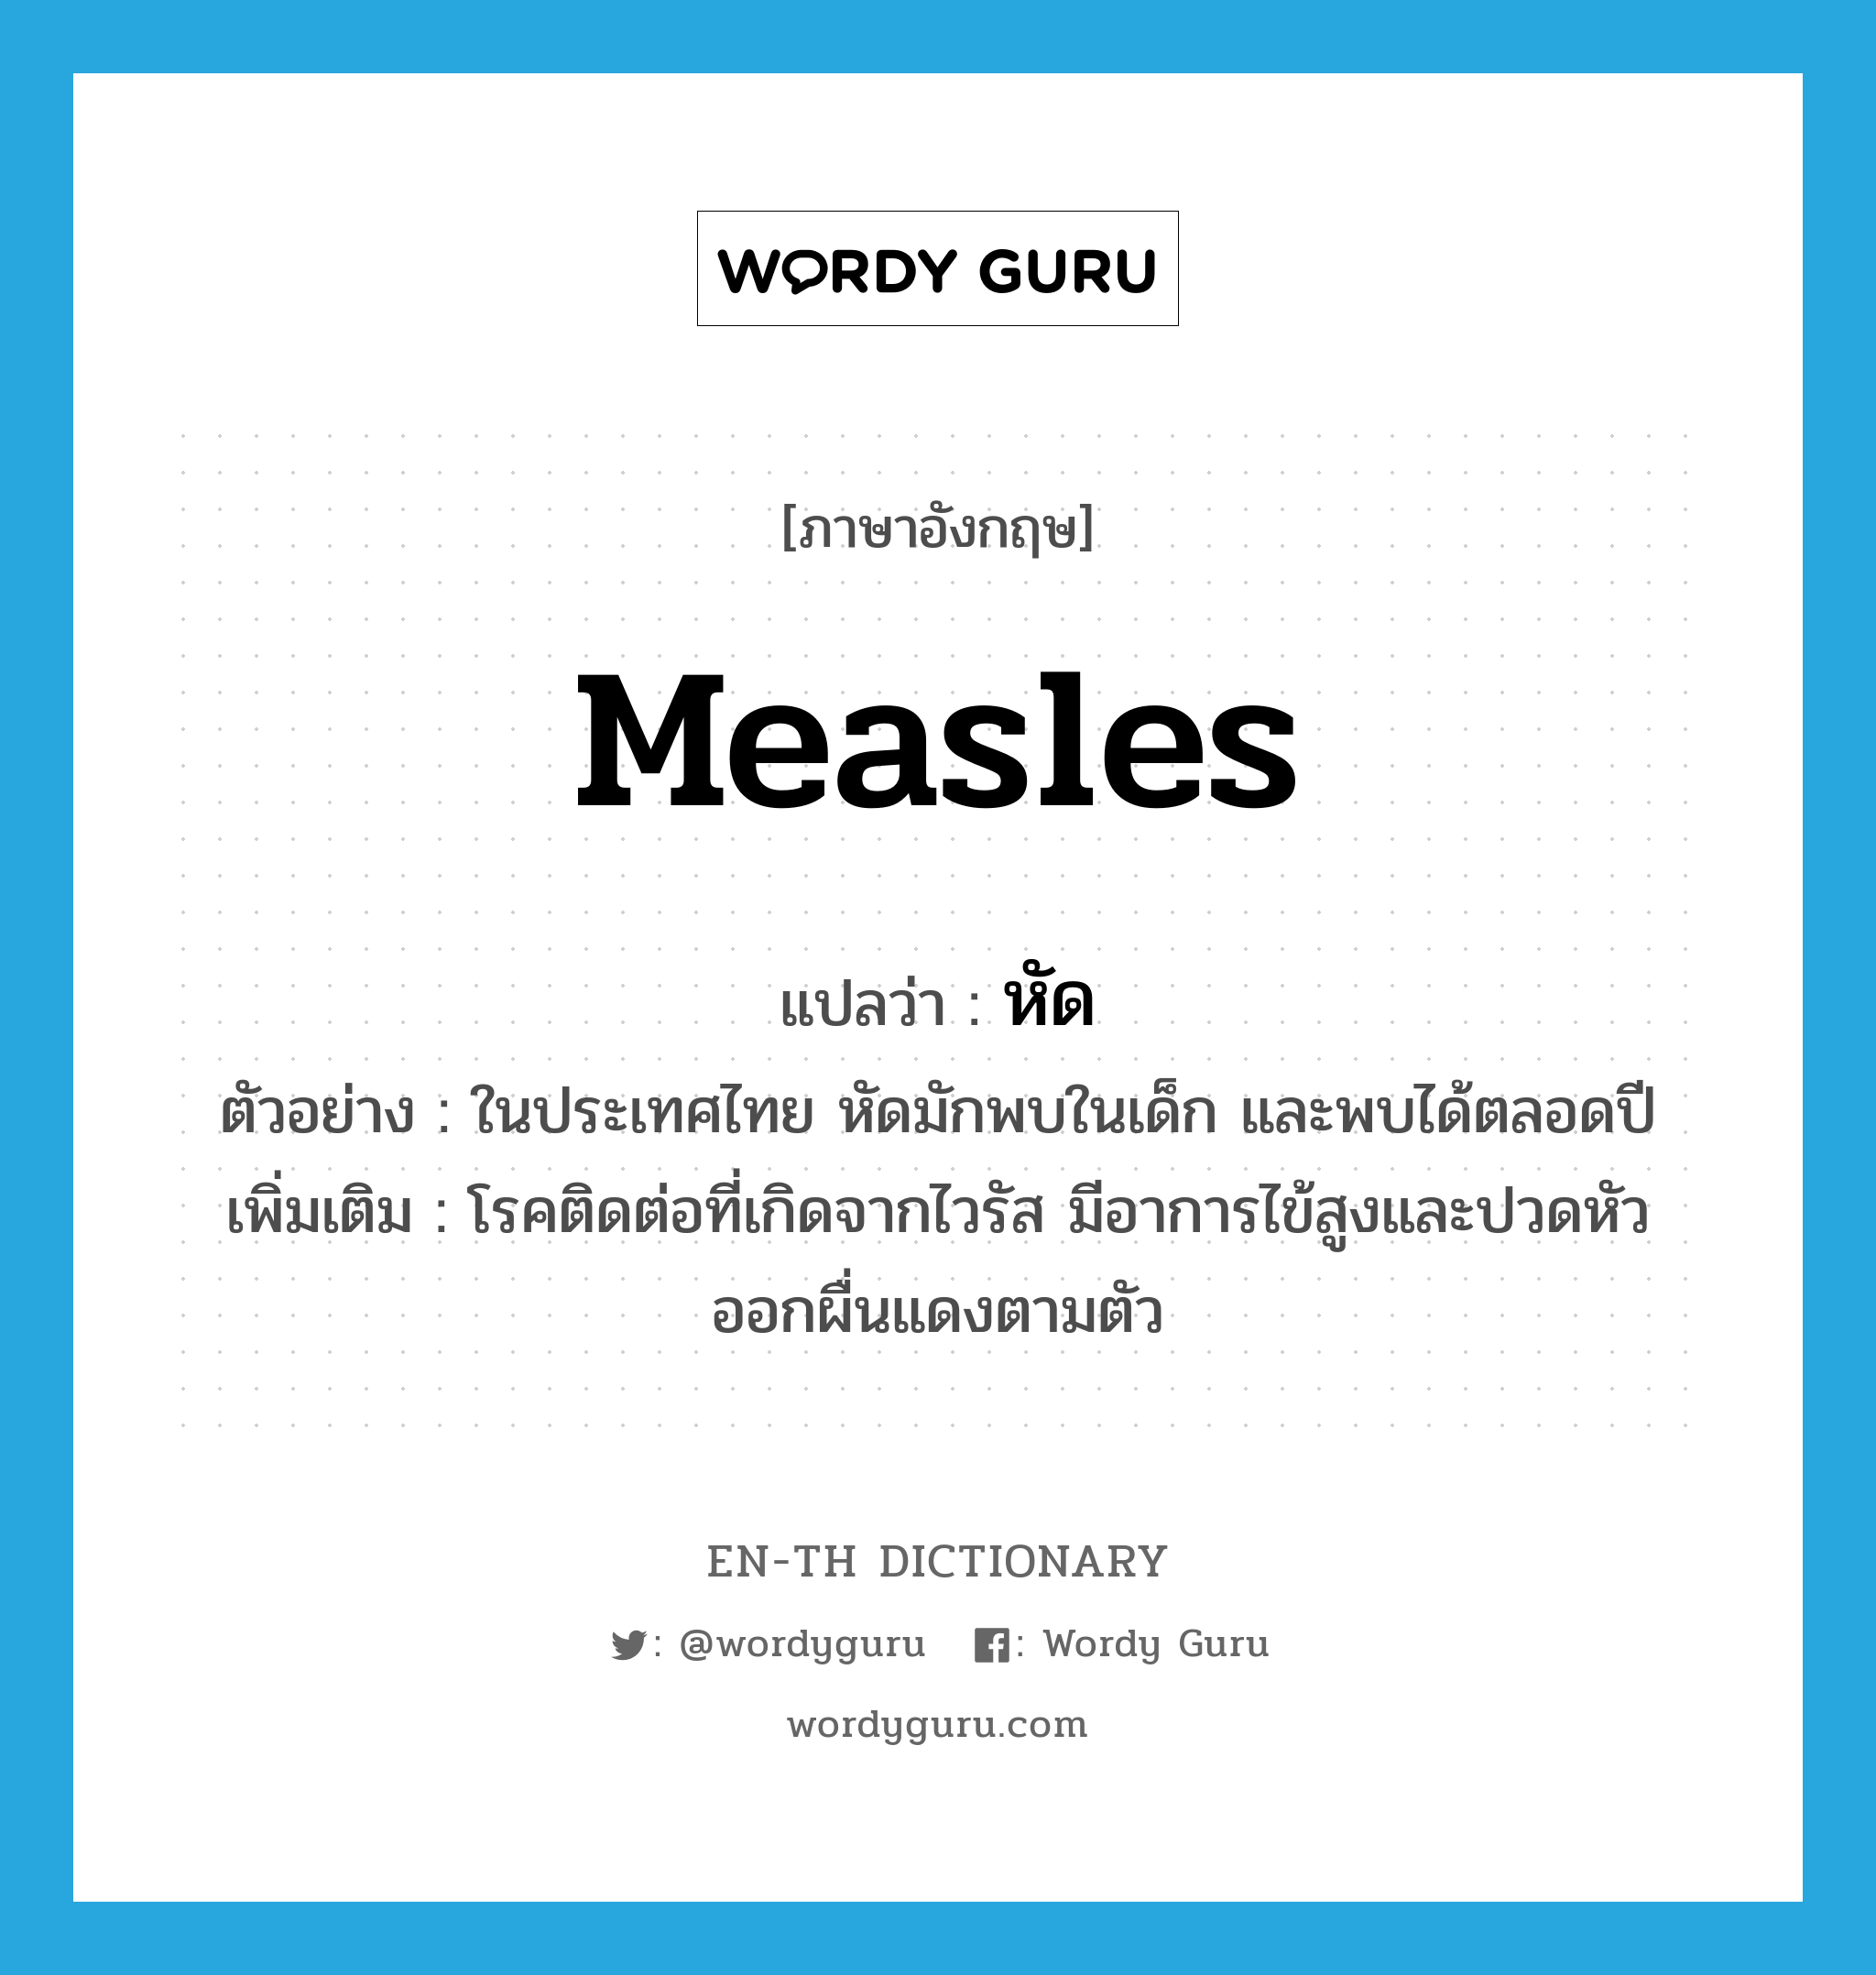 measles แปลว่า?, คำศัพท์ภาษาอังกฤษ measles แปลว่า หัด ประเภท N ตัวอย่าง ในประเทศไทย หัดมักพบในเด็ก และพบได้ตลอดปี เพิ่มเติม โรคติดต่อที่เกิดจากไวรัส มีอาการไข้สูงและปวดหัว ออกผื่นแดงตามตัว หมวด N